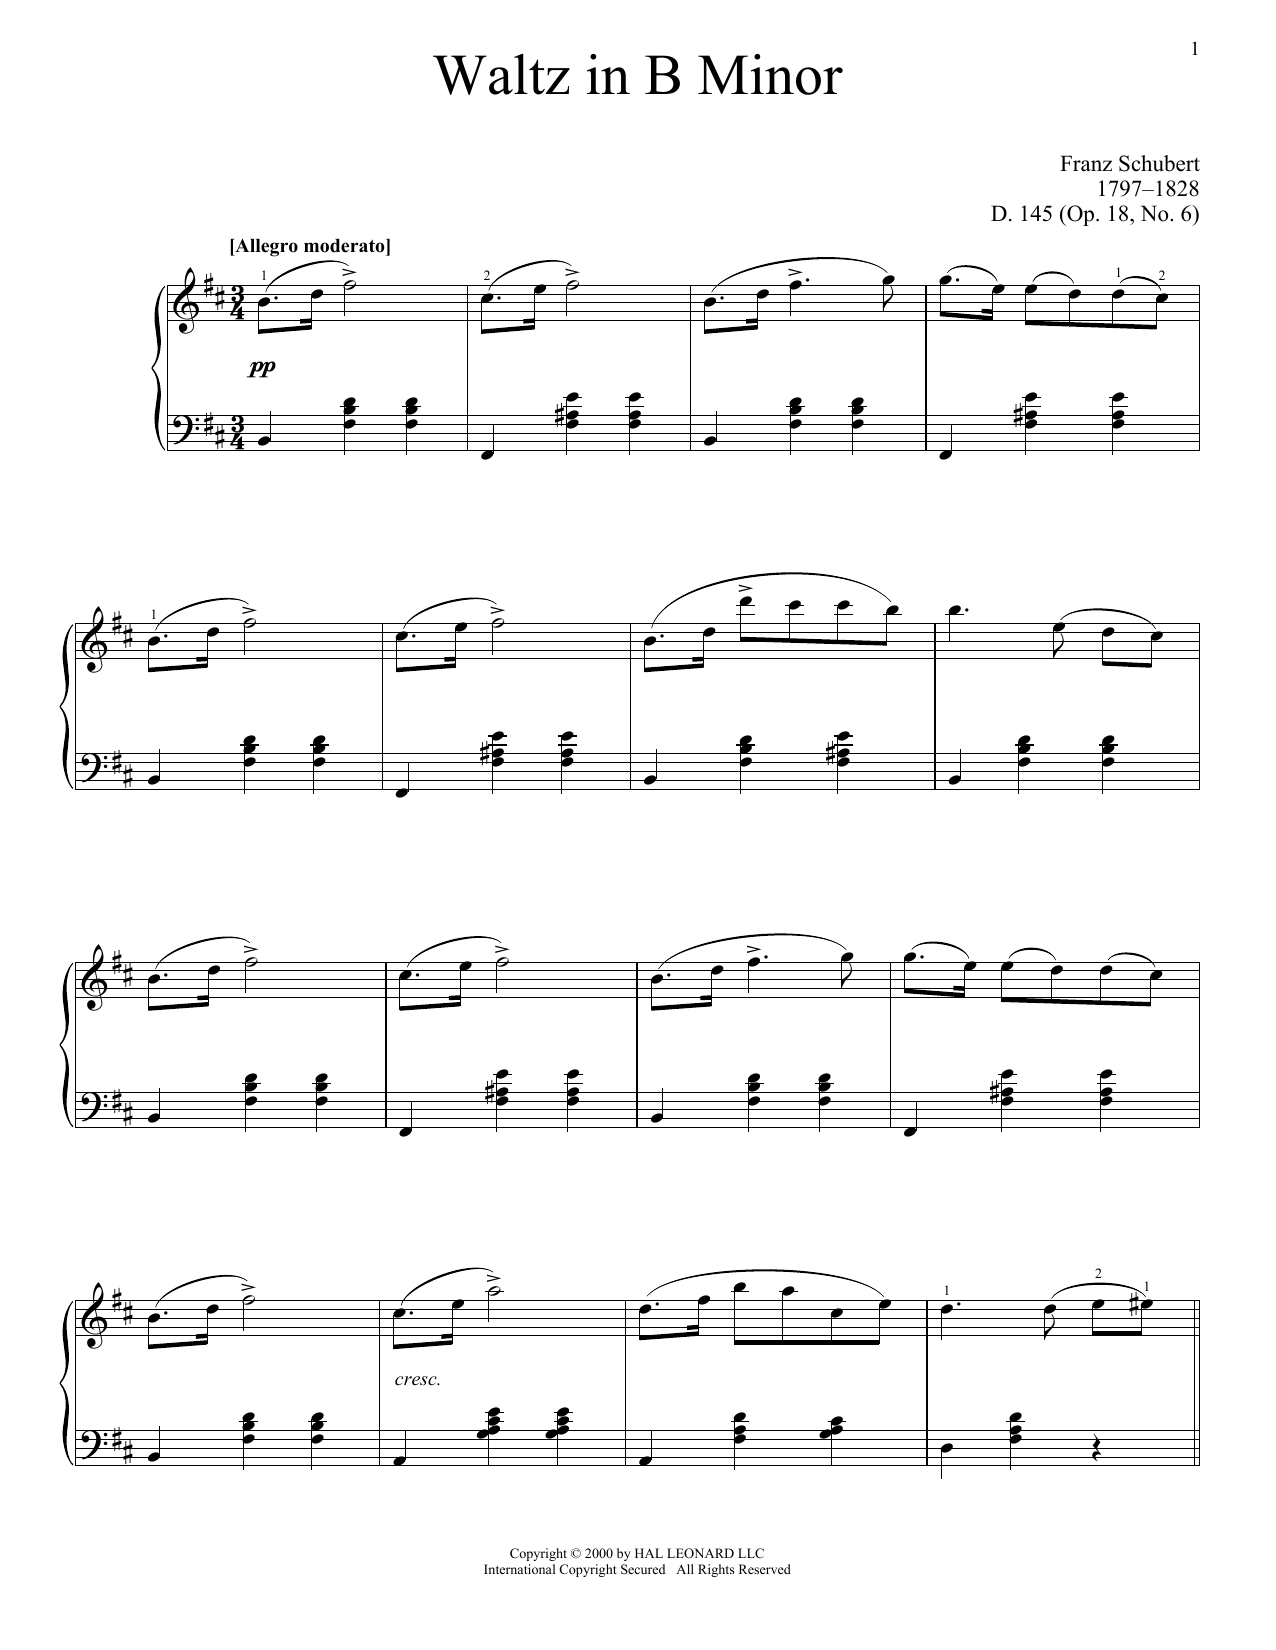 Download Franz Schubert Waltz In B Minor, Op. 18, No. 6 Sheet Music